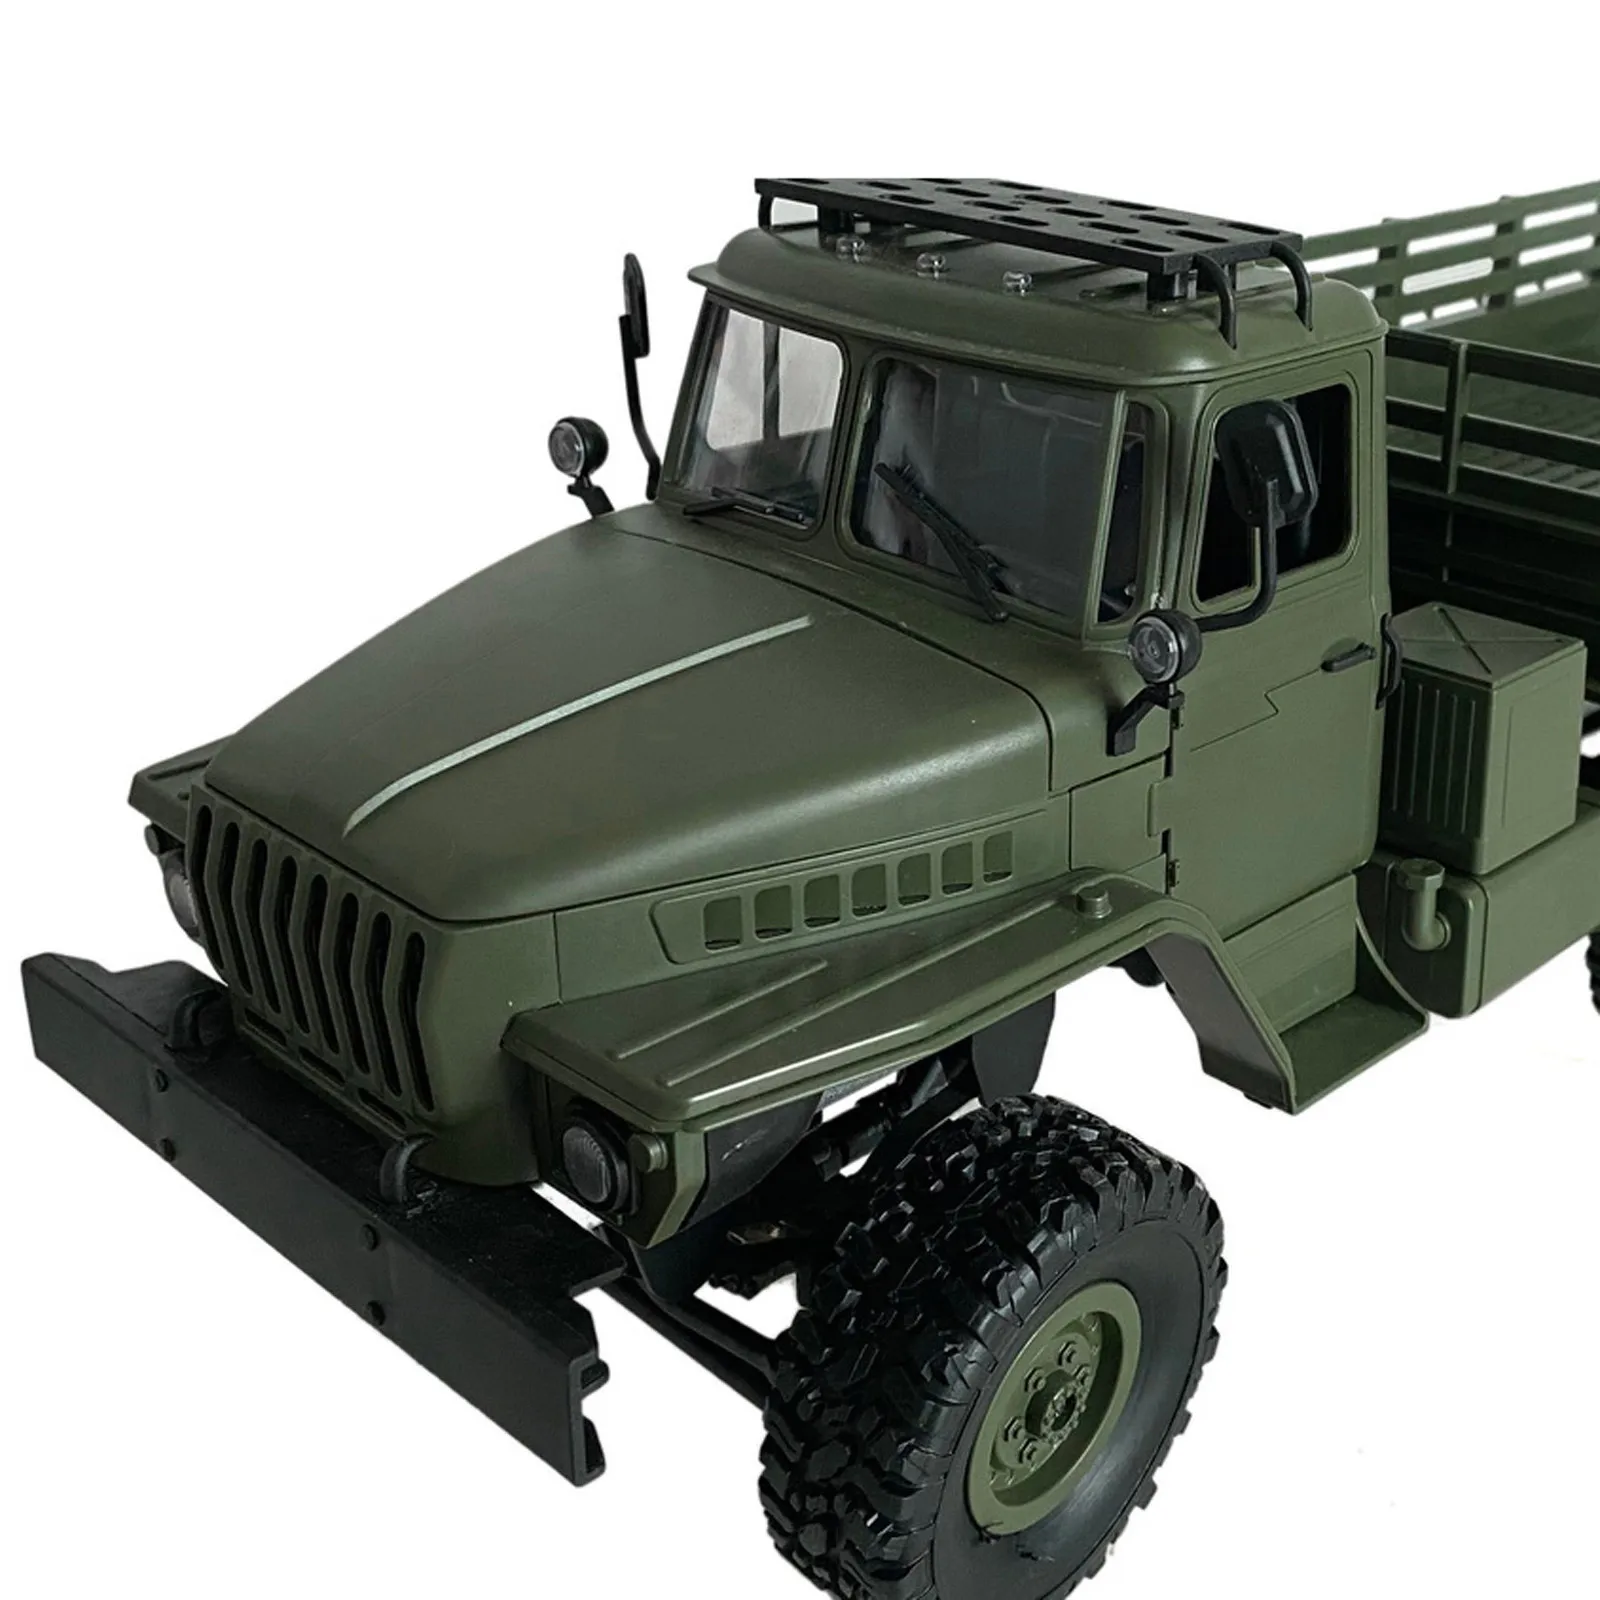 

Mn88s 1/16 мини радиоуправляемая машина 2,4g 6wd военный грузовик внедорожник дистанционное управление восхождение машина модель детские игрушки